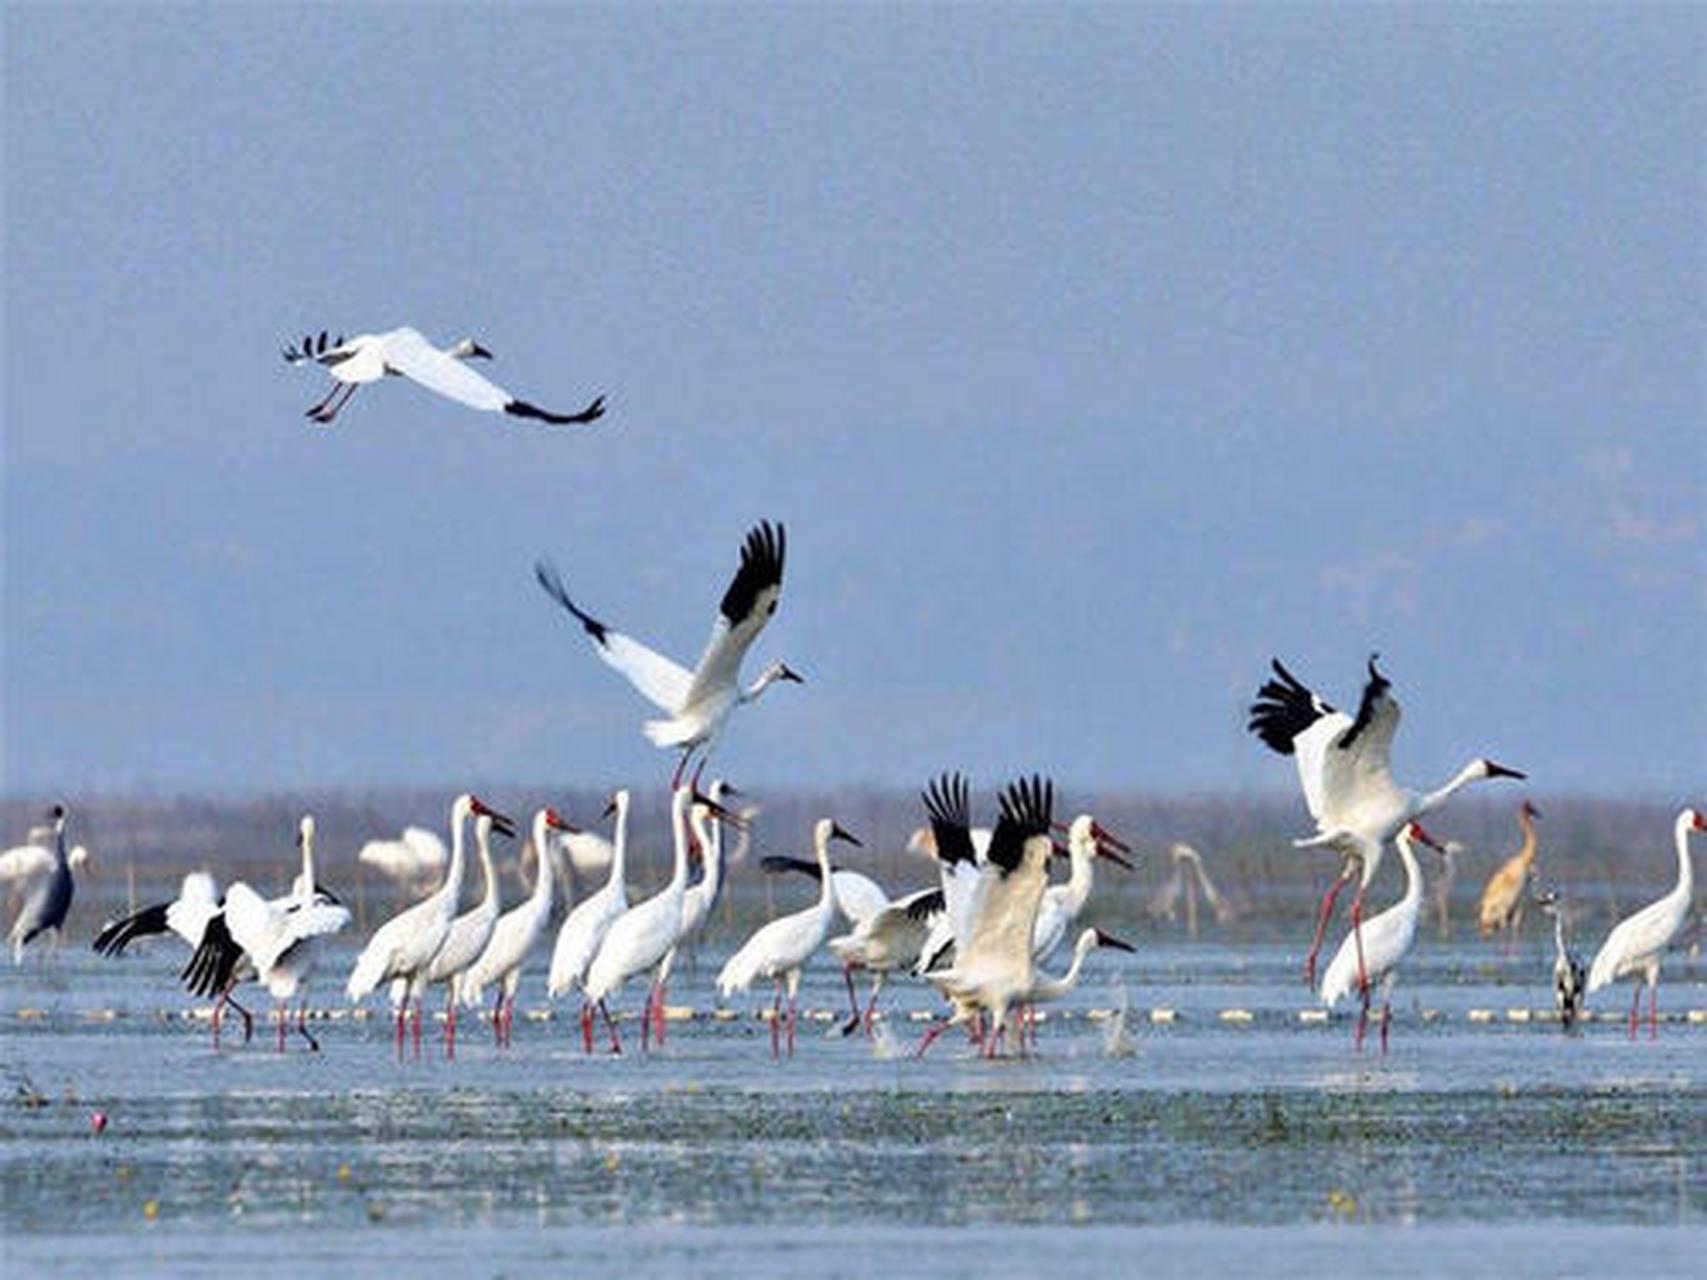 鄱阳湖国家湿地公园:这座湿地公园在当地的可以说是人气超高的景点,超